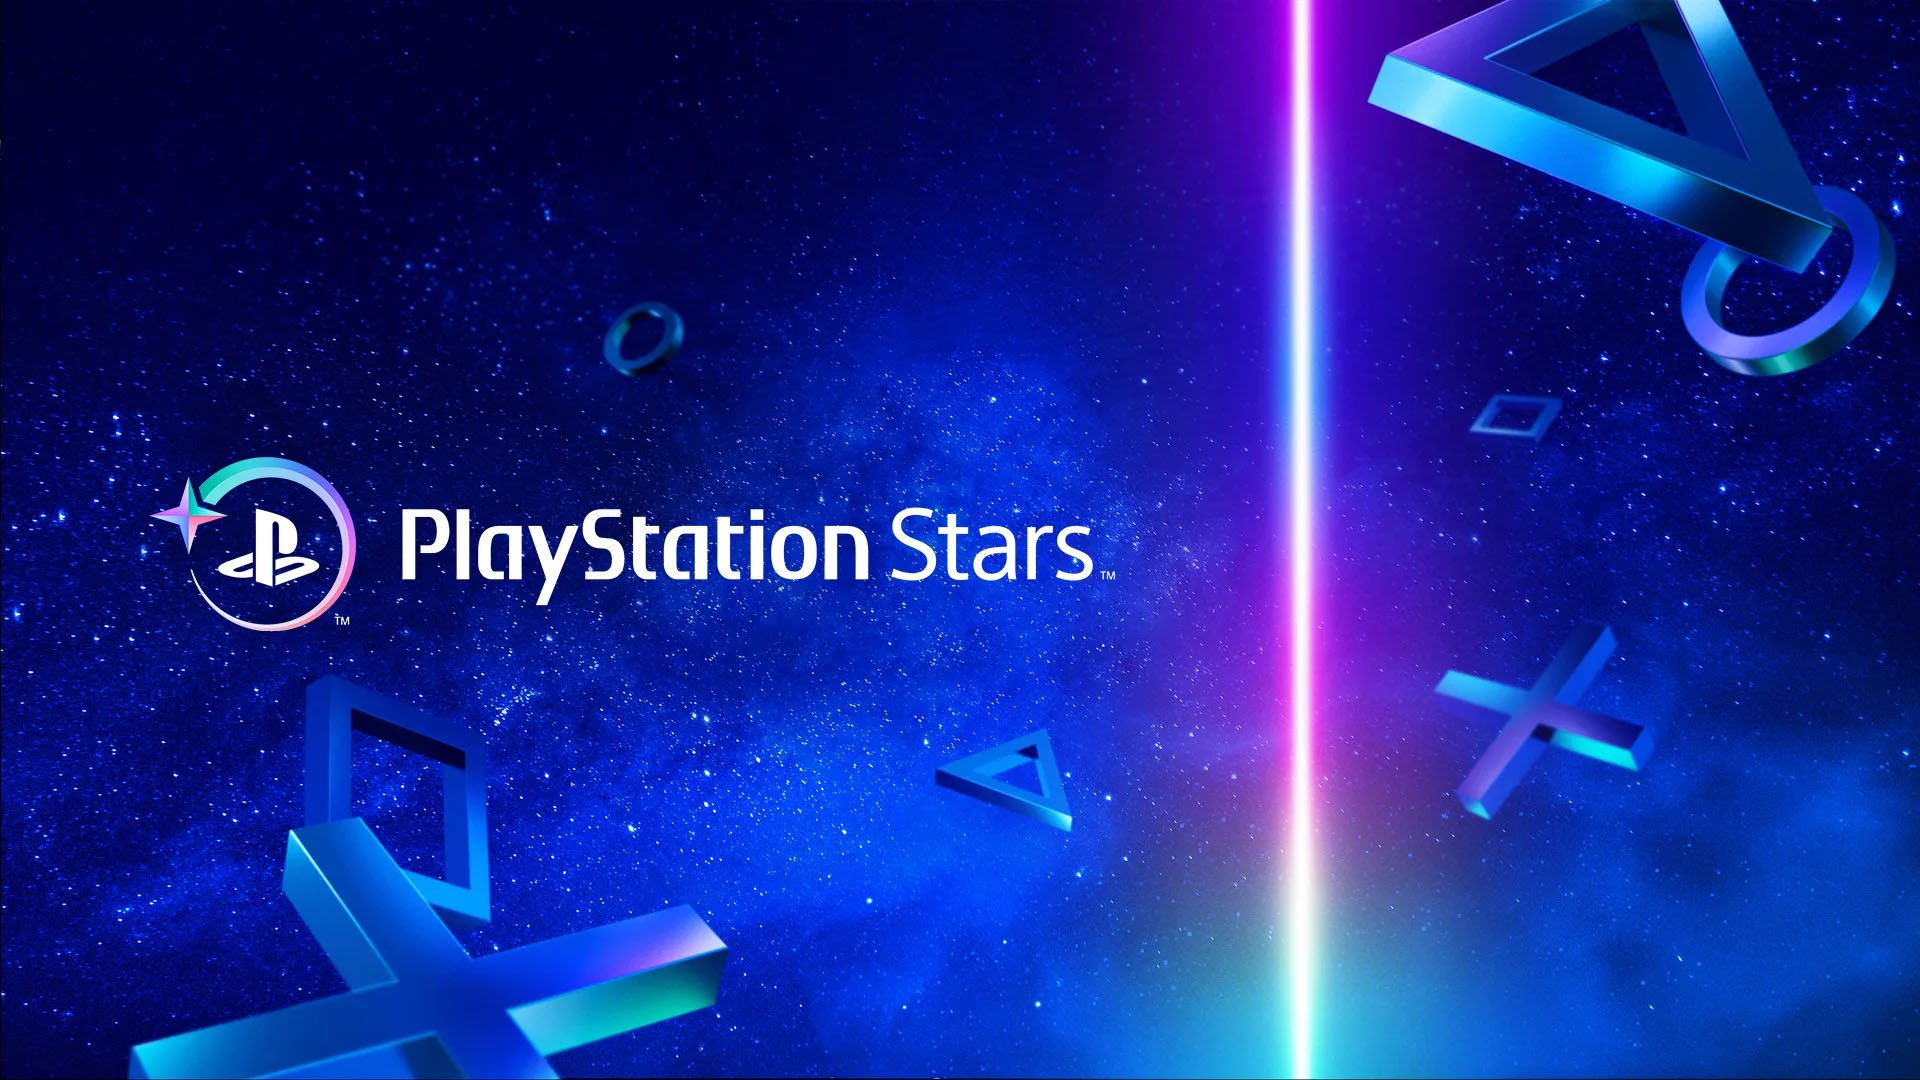 PlayStation Stars bude spuštěn 29. září v Japonsku a Asii, 5. října v Americe a 13. října v Evropě a Austrálii.